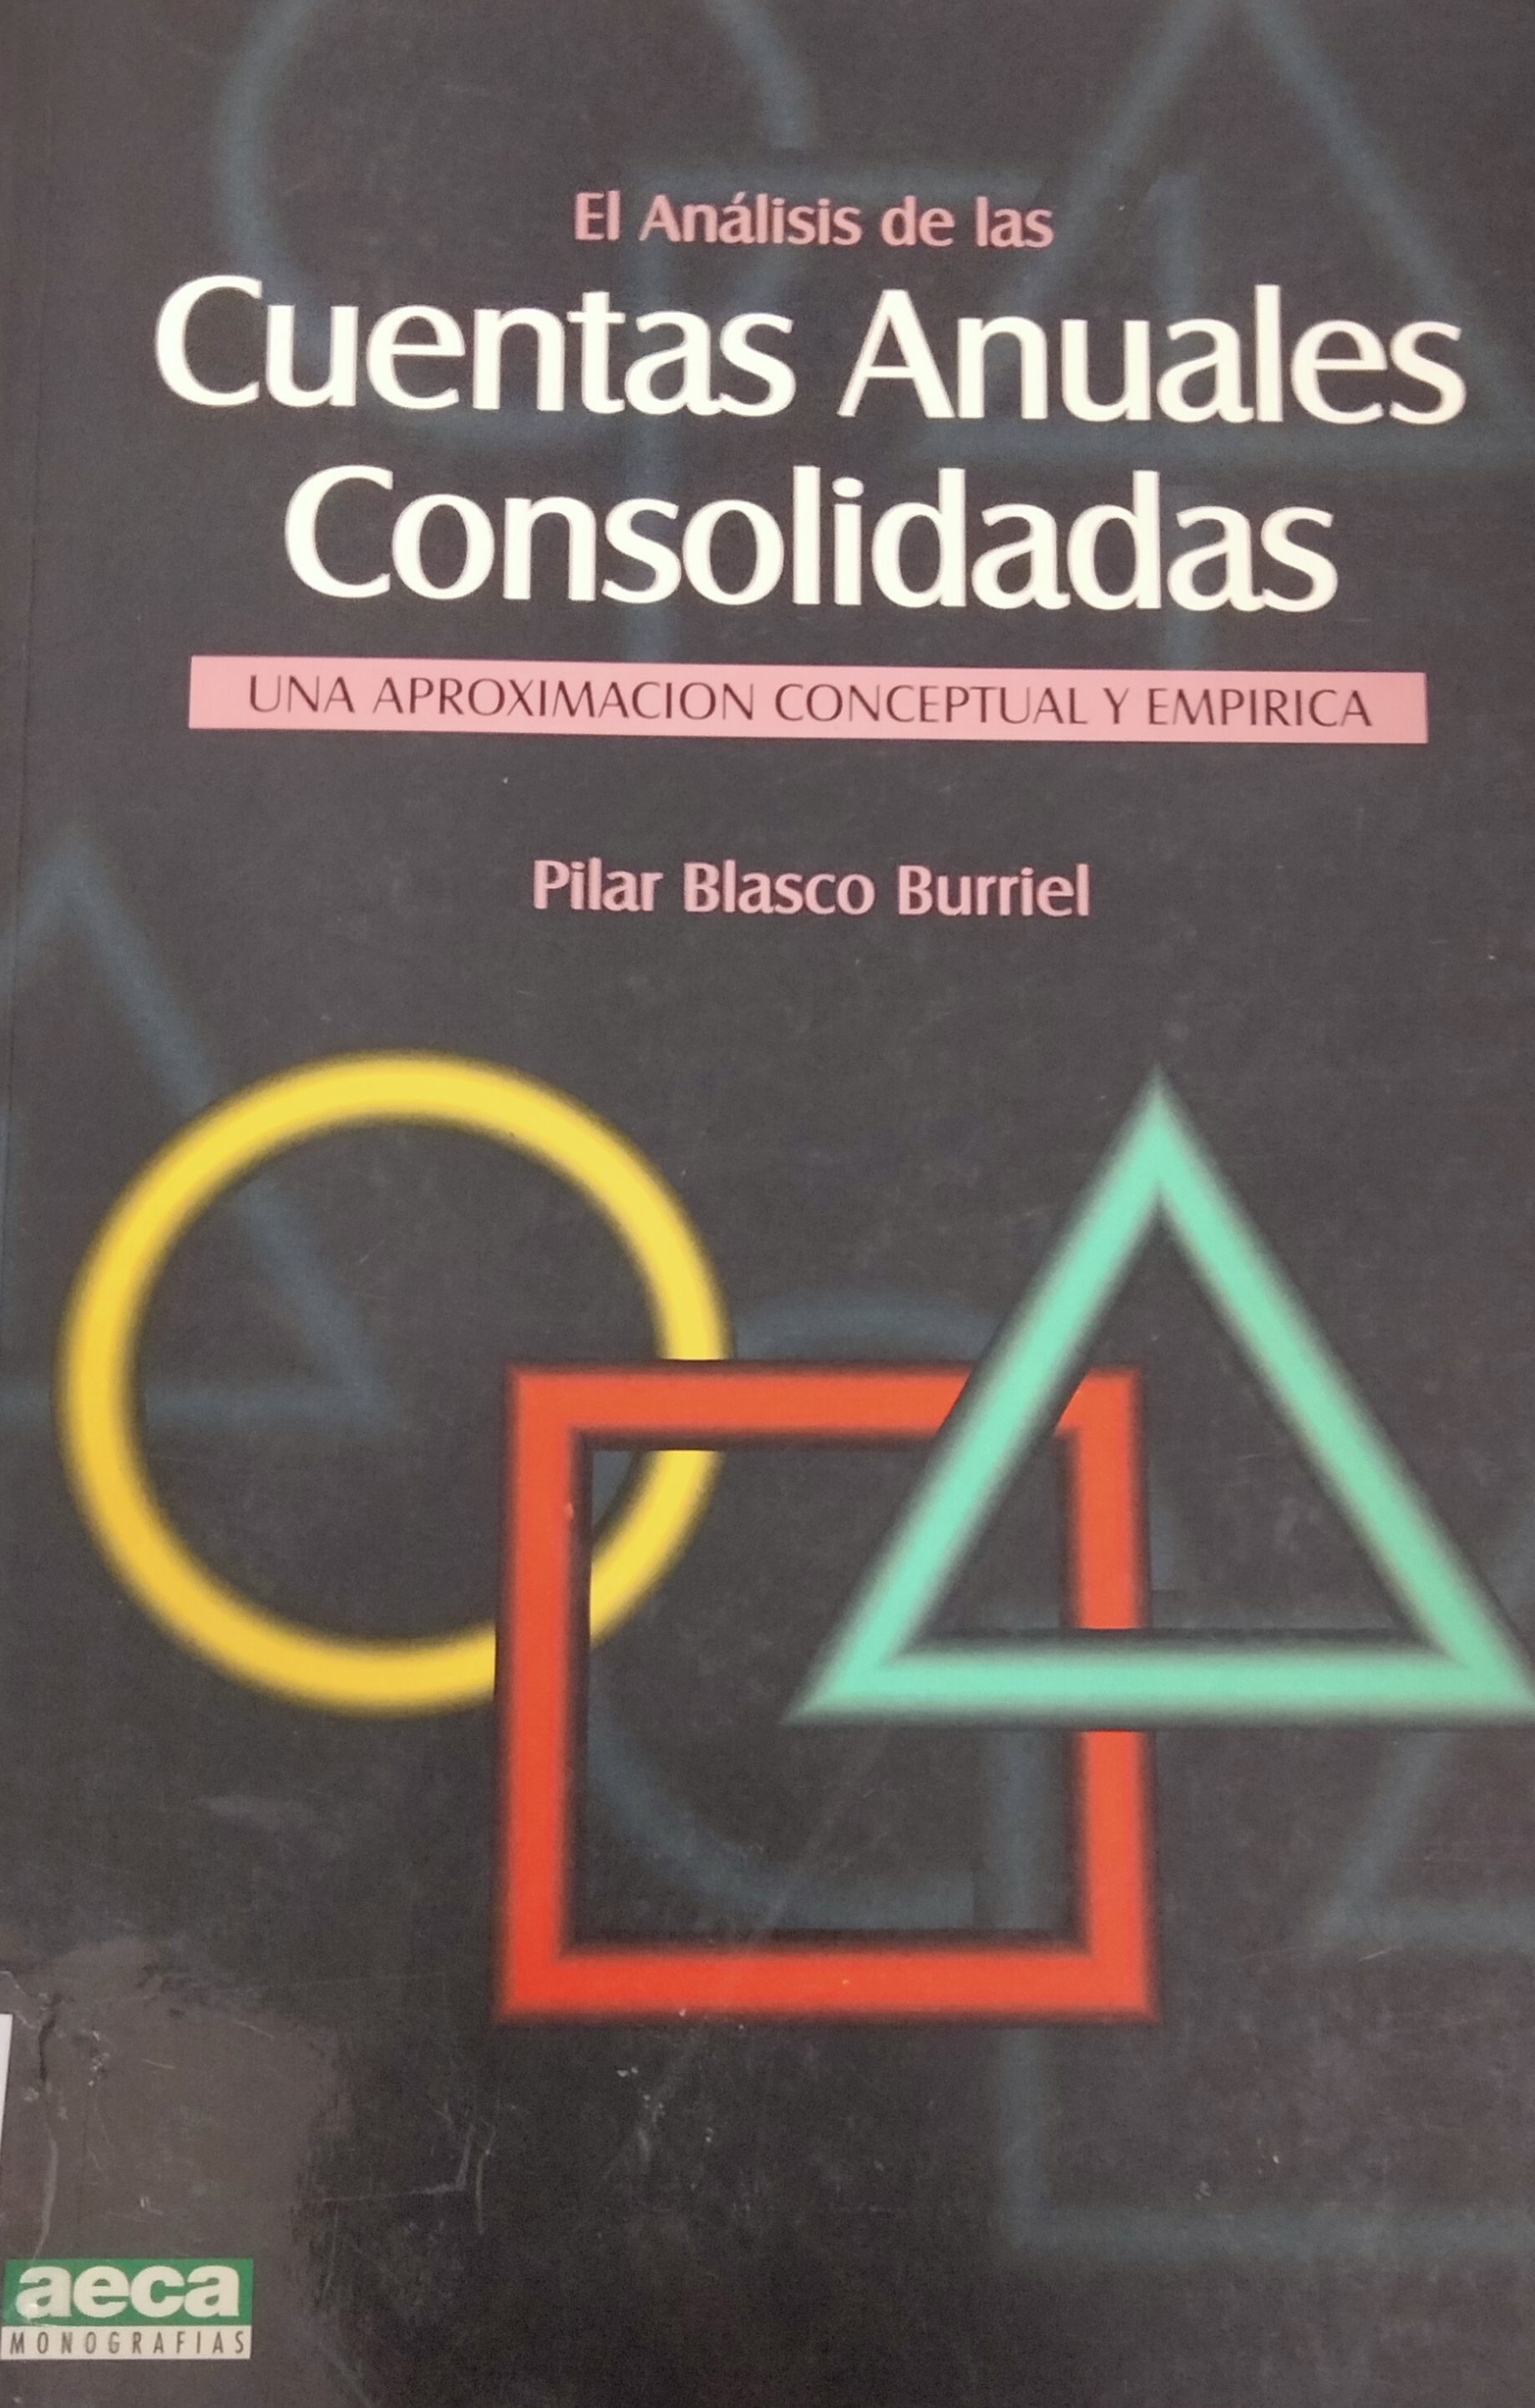 Imagen de portada del libro El análisis de las cuentas anuales consolidadas